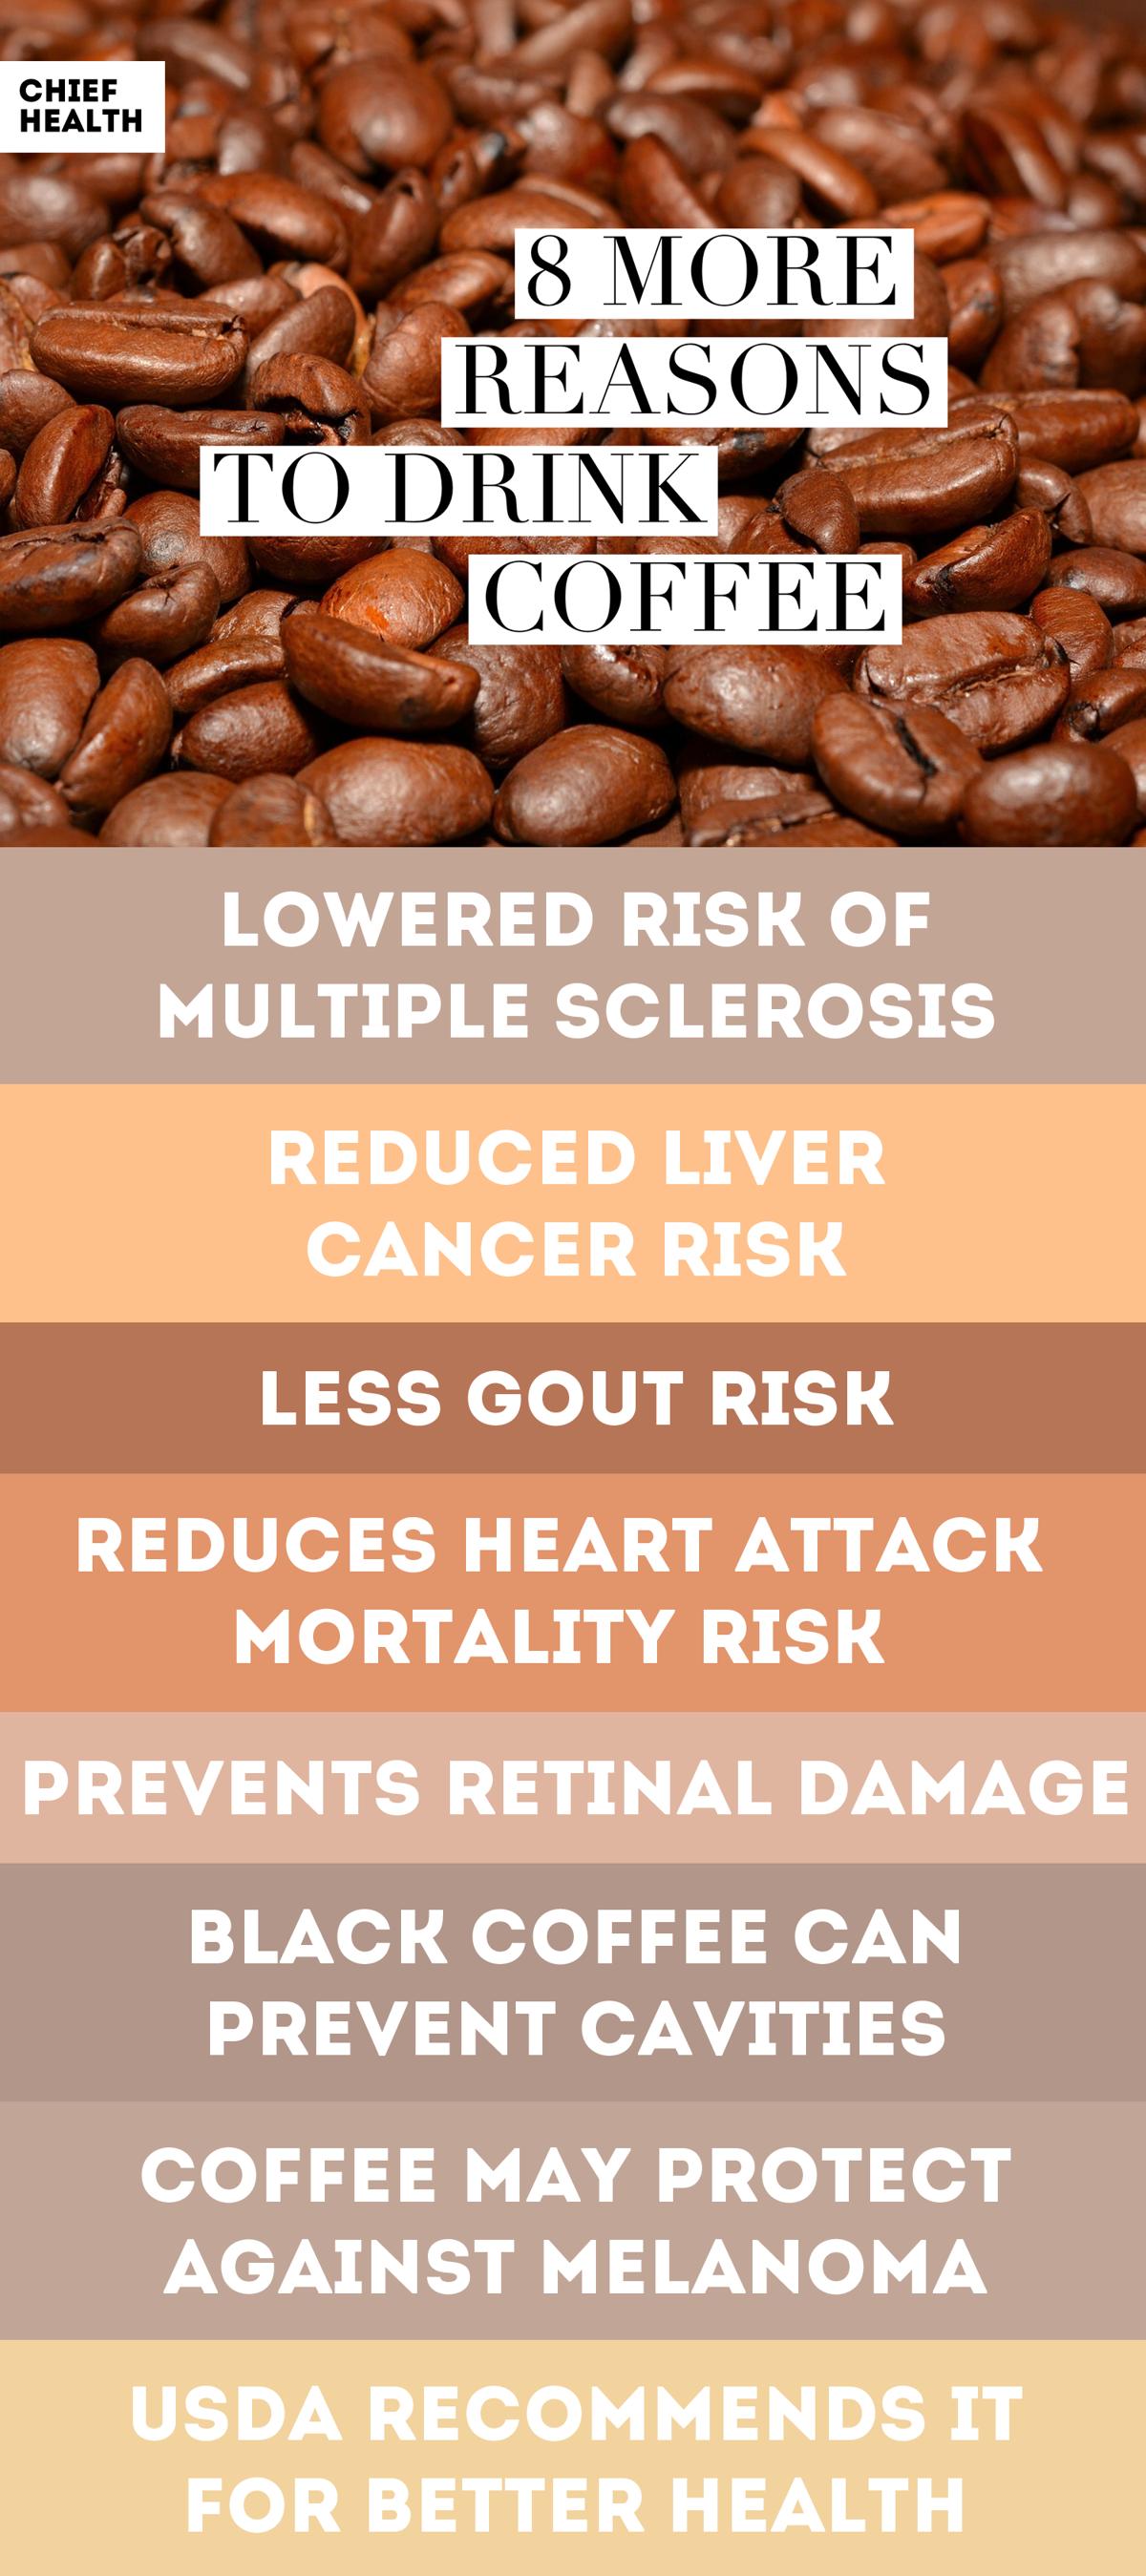 Korzyści zdrowotne związane z piciem kawy